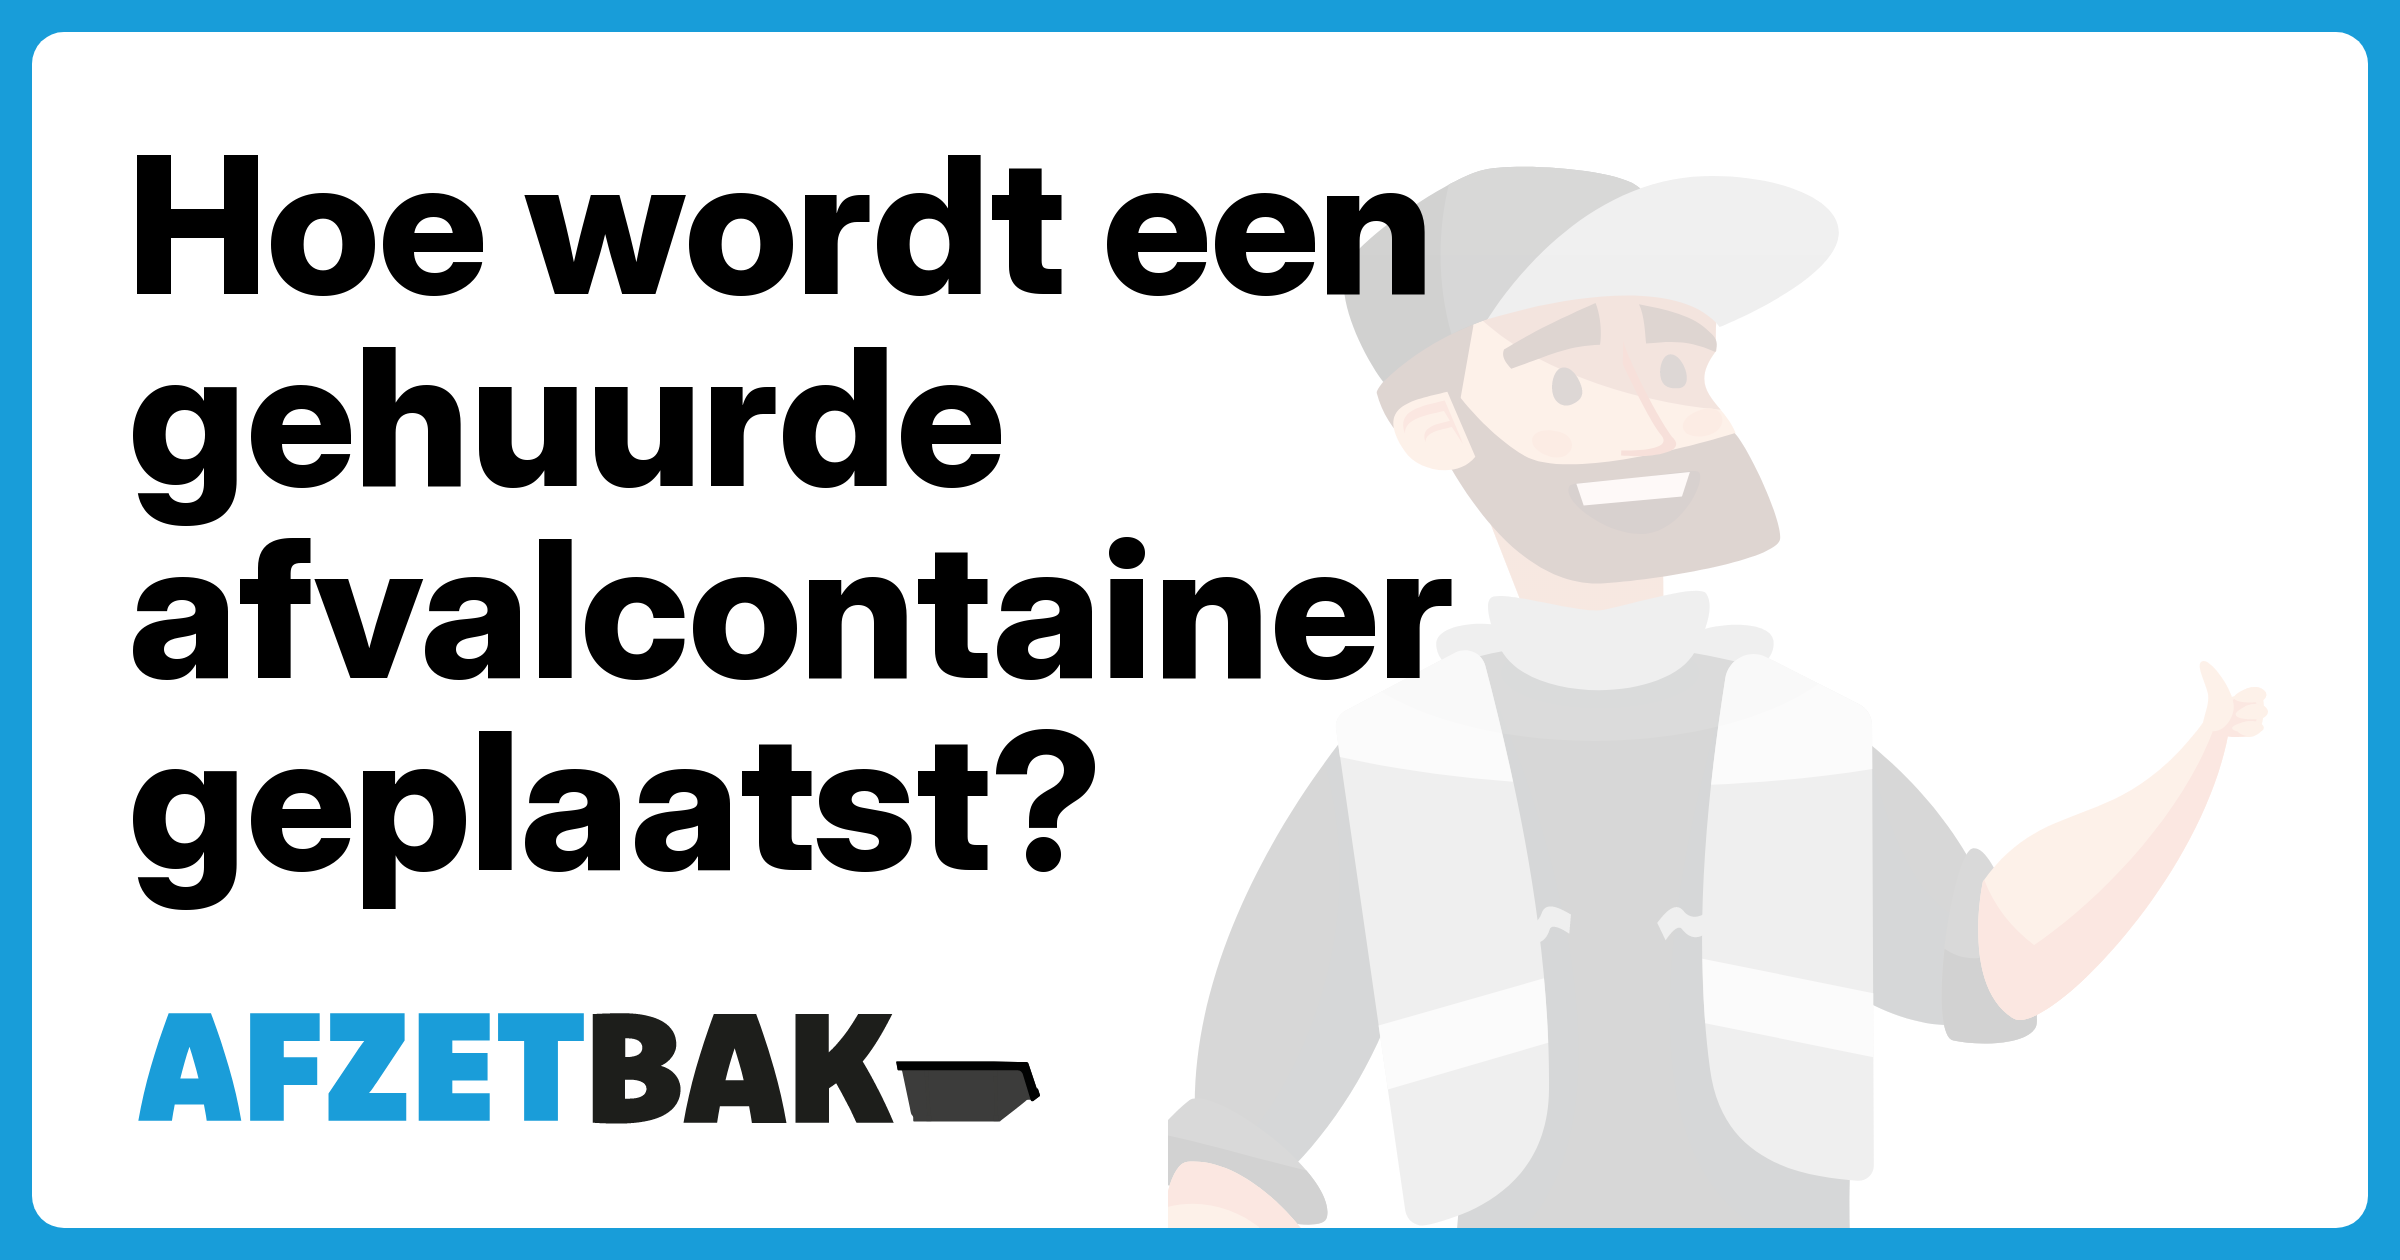 Hoe wordt een gehuurde afvalcontainer geplaatst? - Afzetbak.nl